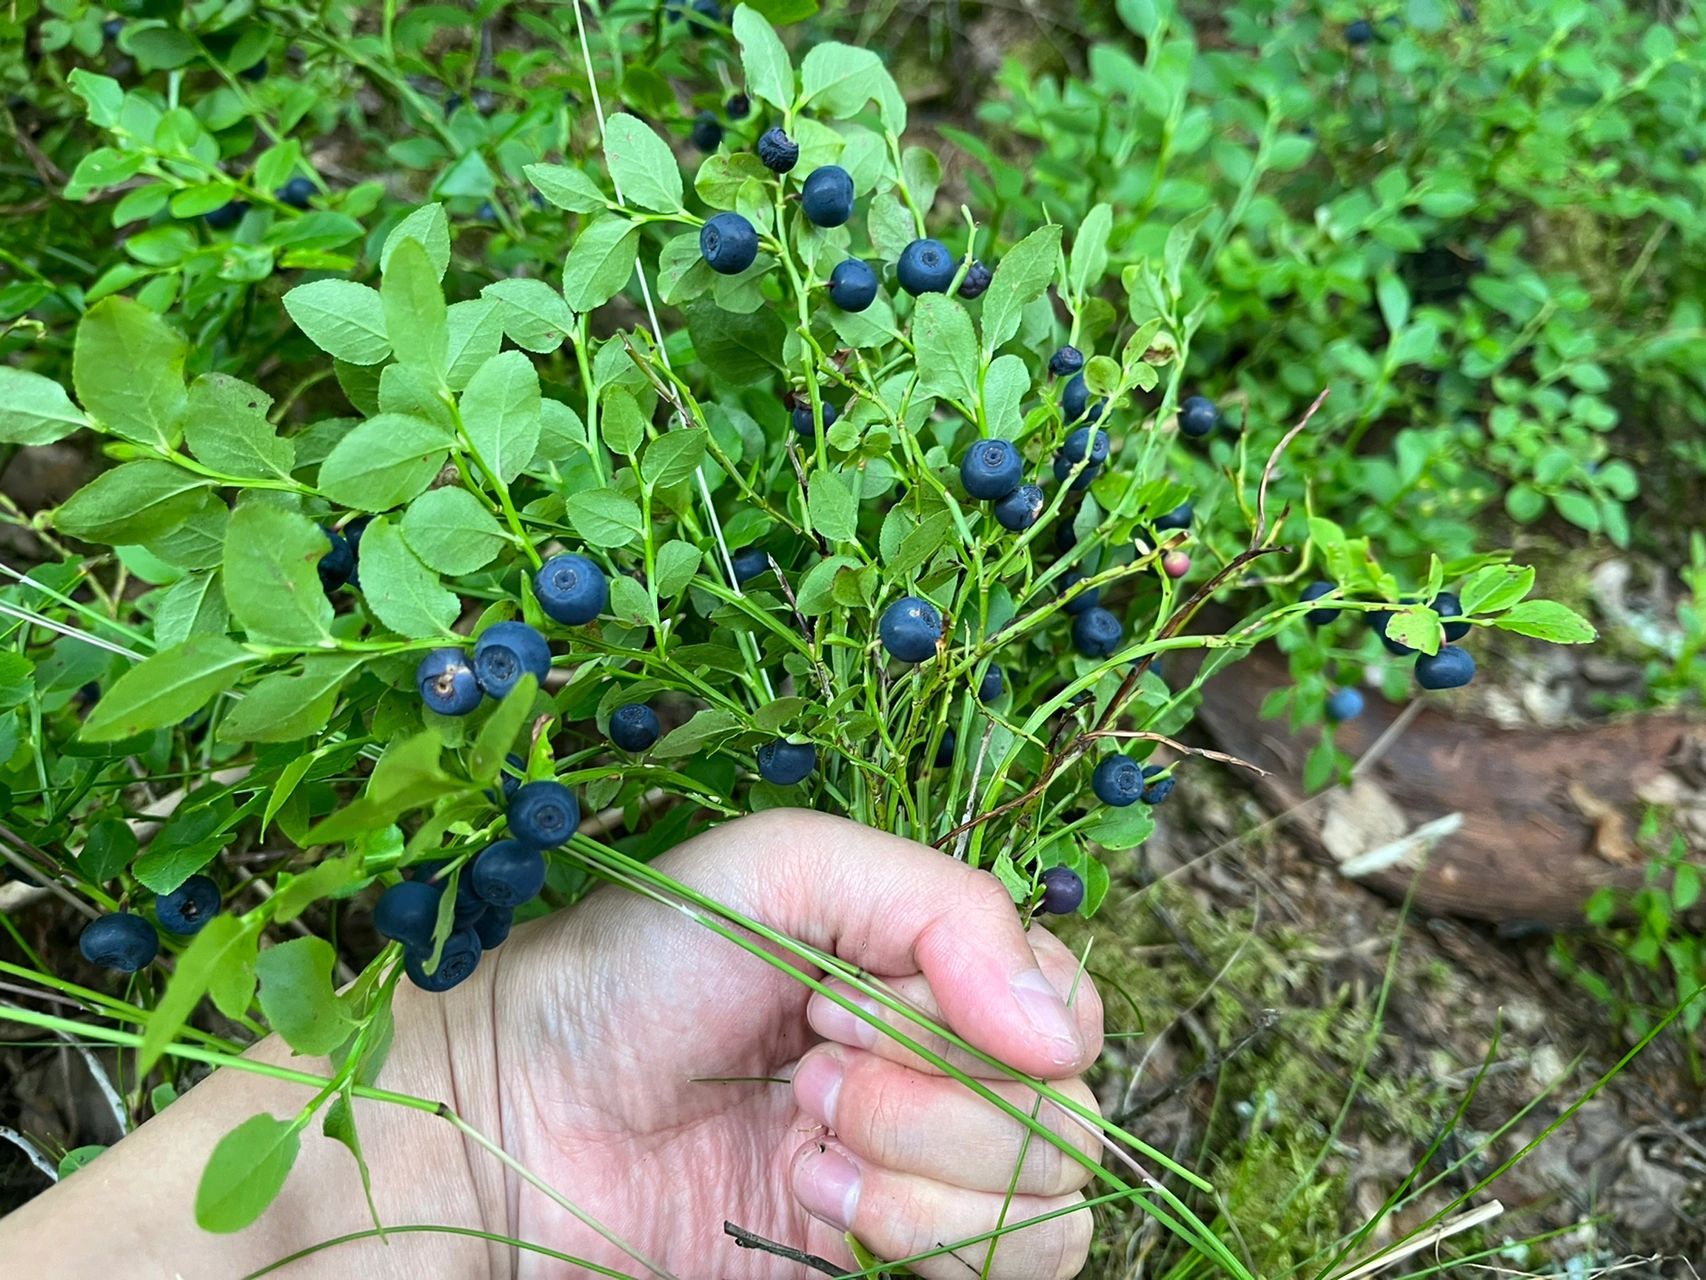 今年的野蓝莓大丰收了  昨天看到超市门口卖野蓝莓了 7欧一斤 就是49